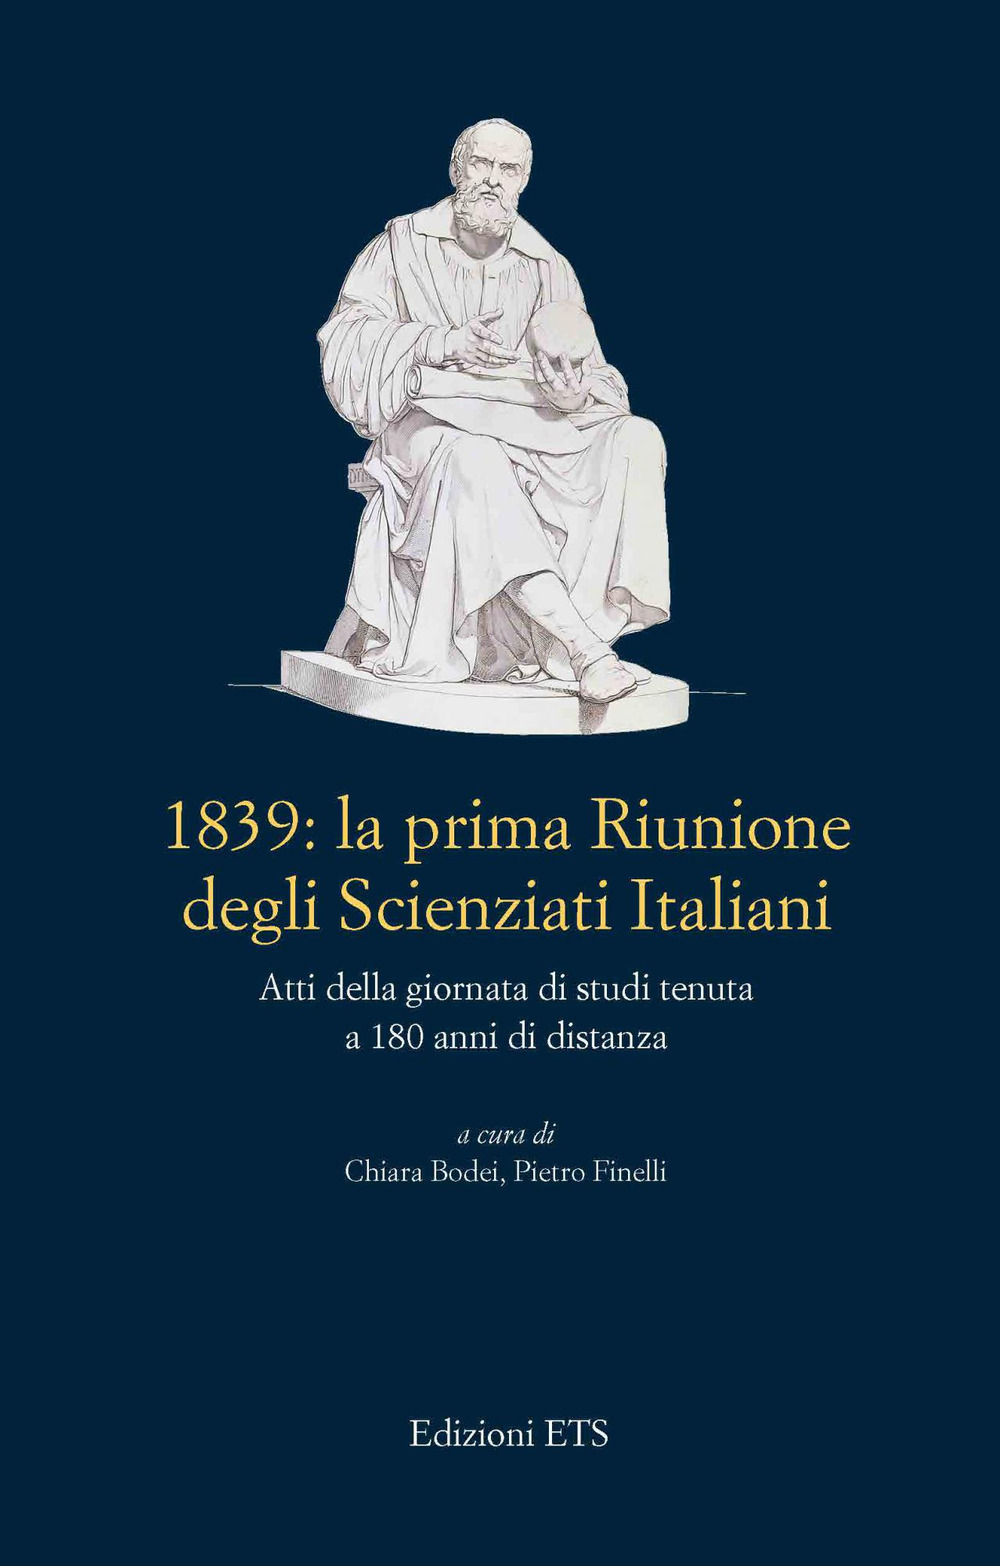 1839: La prima riunione degli scienziati italiani. Atti della giornata di studi tenuta a 180 anni di distanza